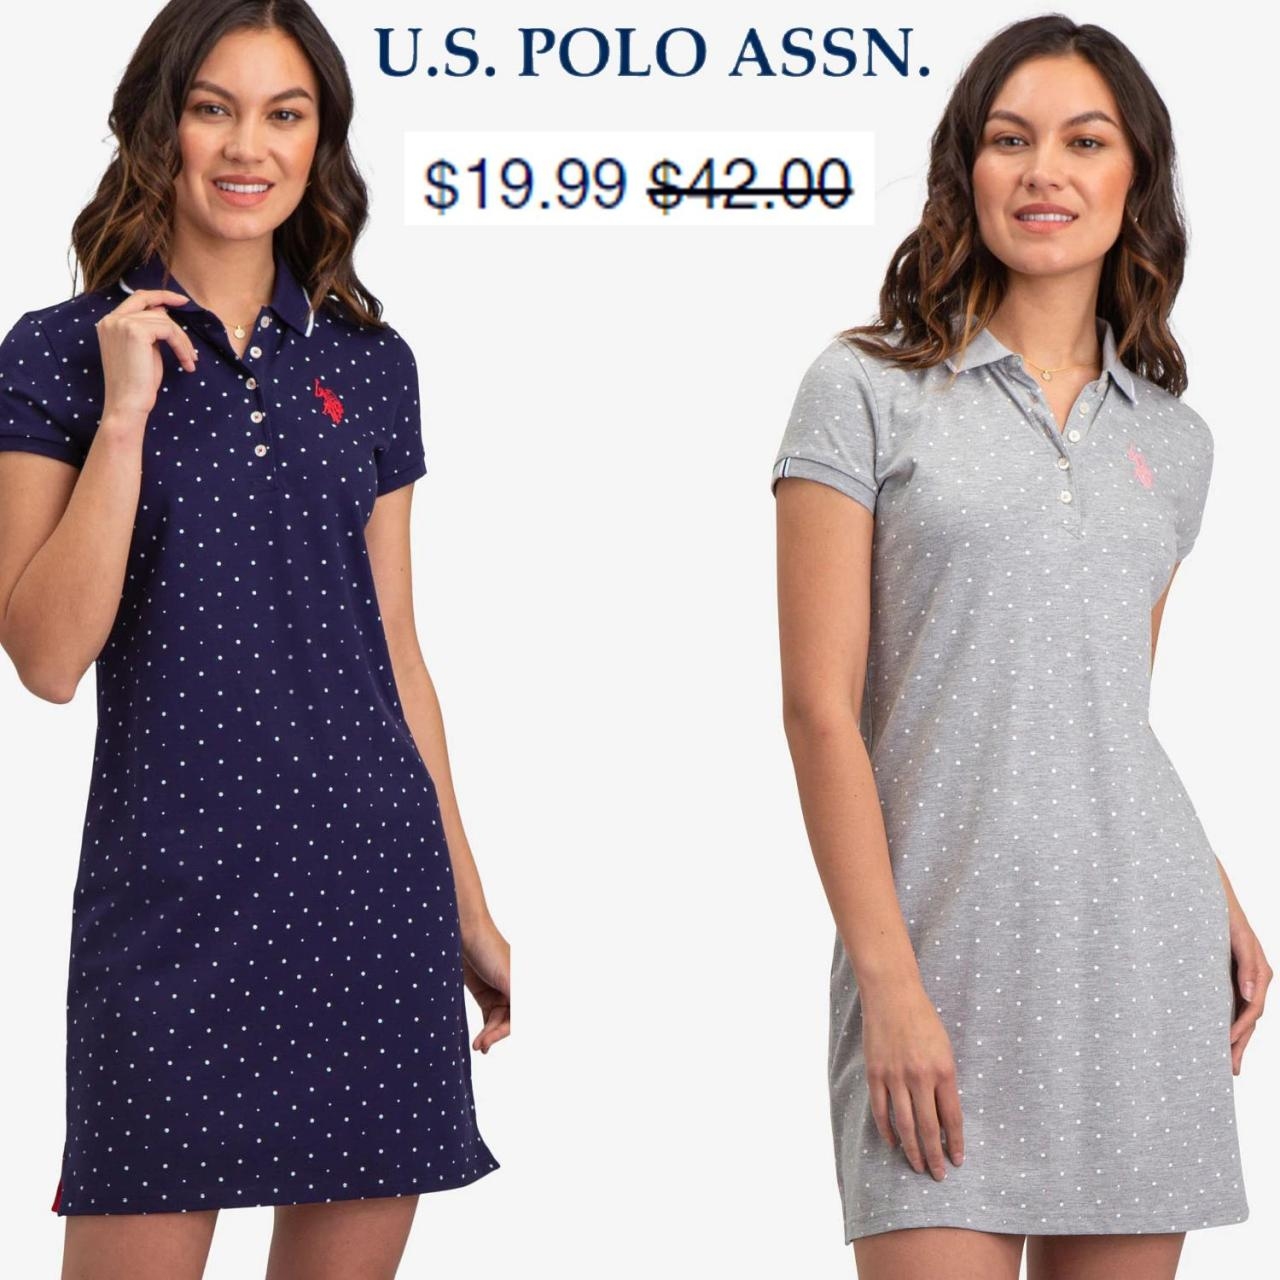 We dress he. Платье Polo Assn 98826. Us Polo Assn платье поло белое. Платье us Polo Assn. Us Polo Assn платье женское.